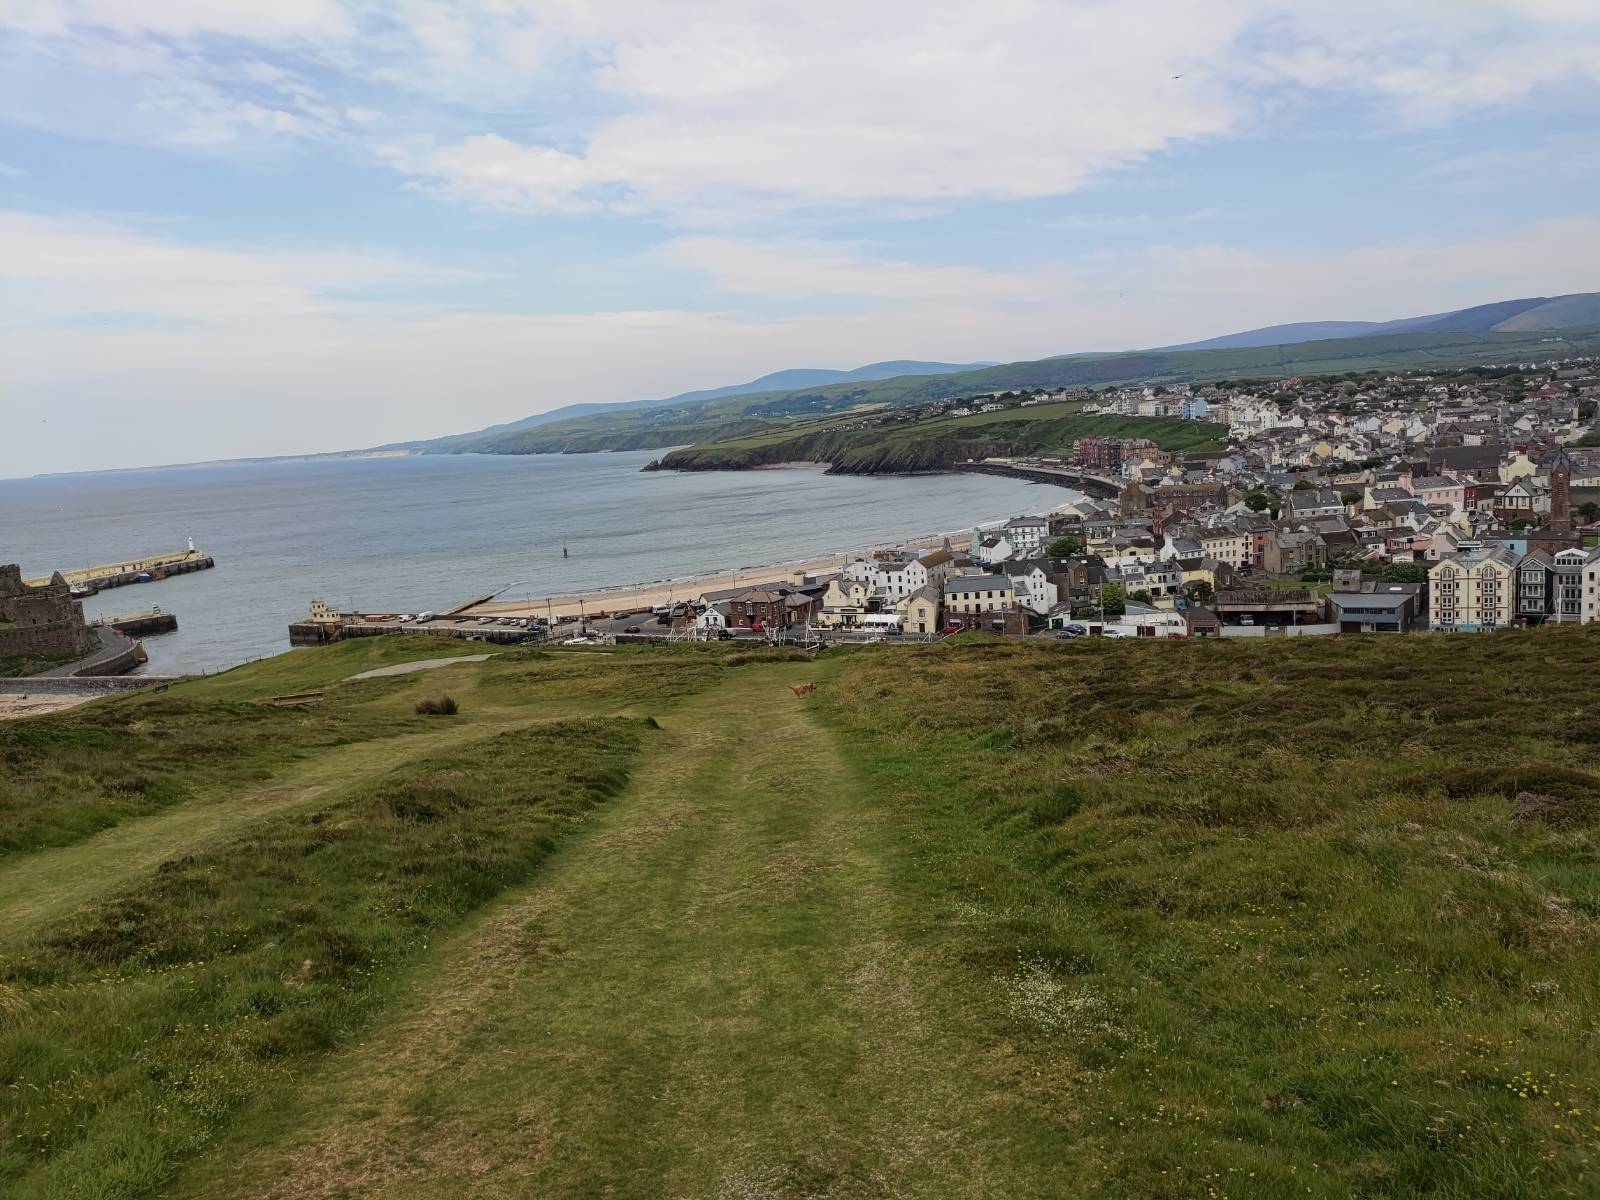 Some photos taken at Peel, Isle of Man